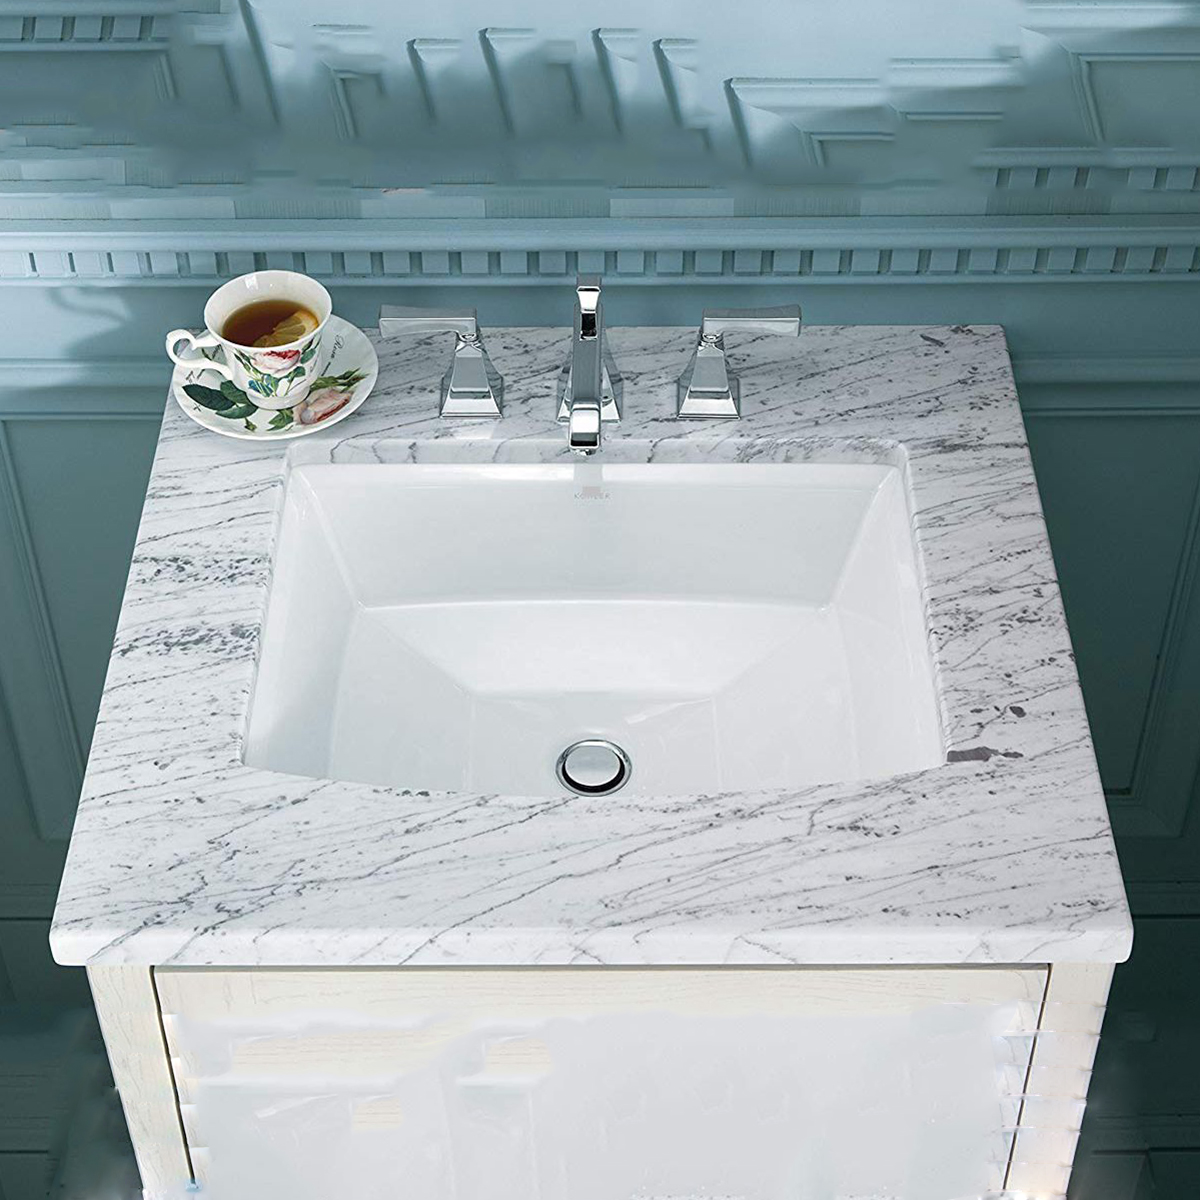 الصين الصانع التصميم الحديث المنزلية بالوعة الأبيض مستطيلة سيراميك الحمام غسل اليد المصارف Undermount 